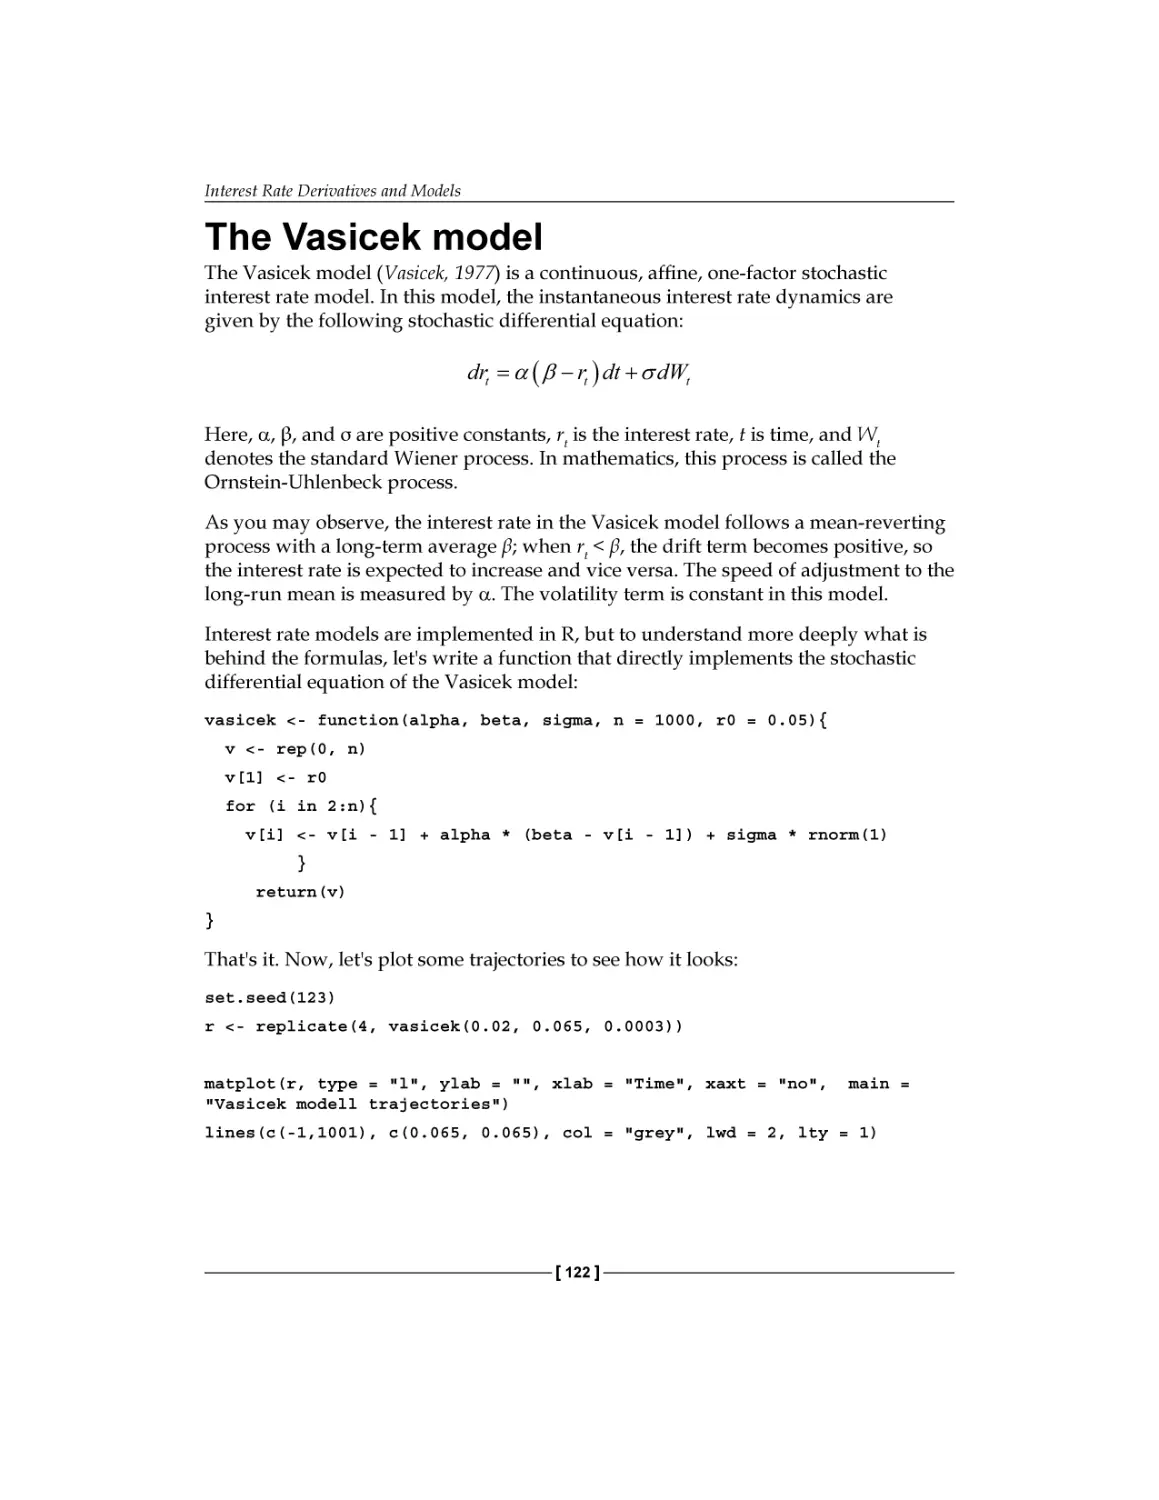 The Vasicek model